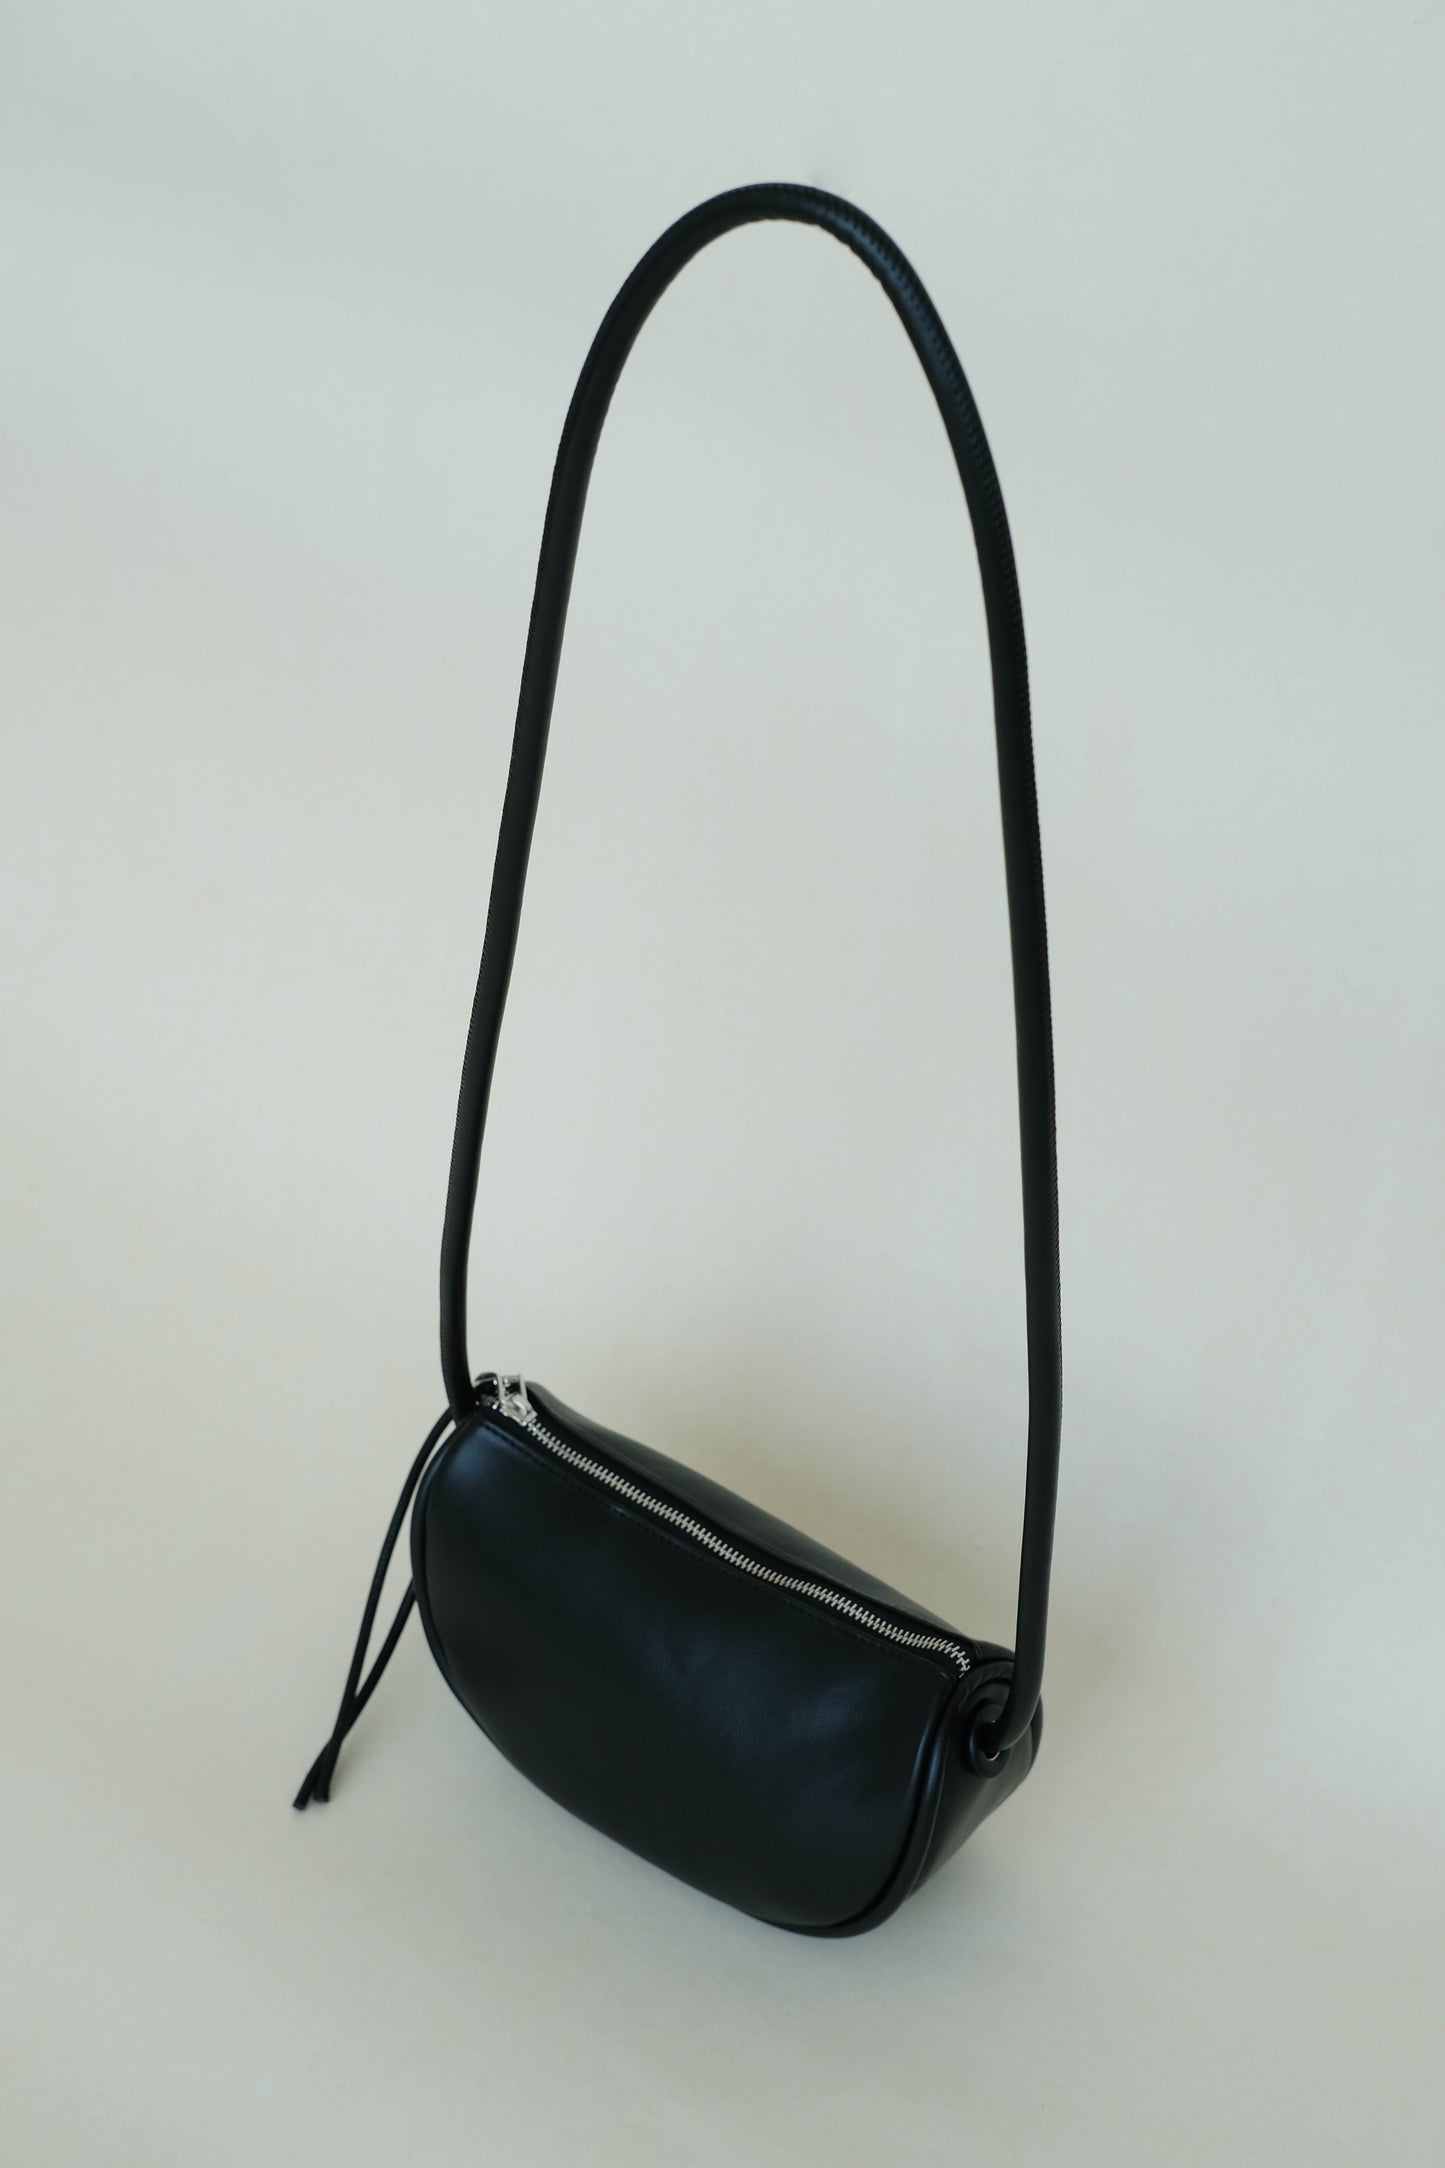 Half-moon saddle shoulder bag in classic black